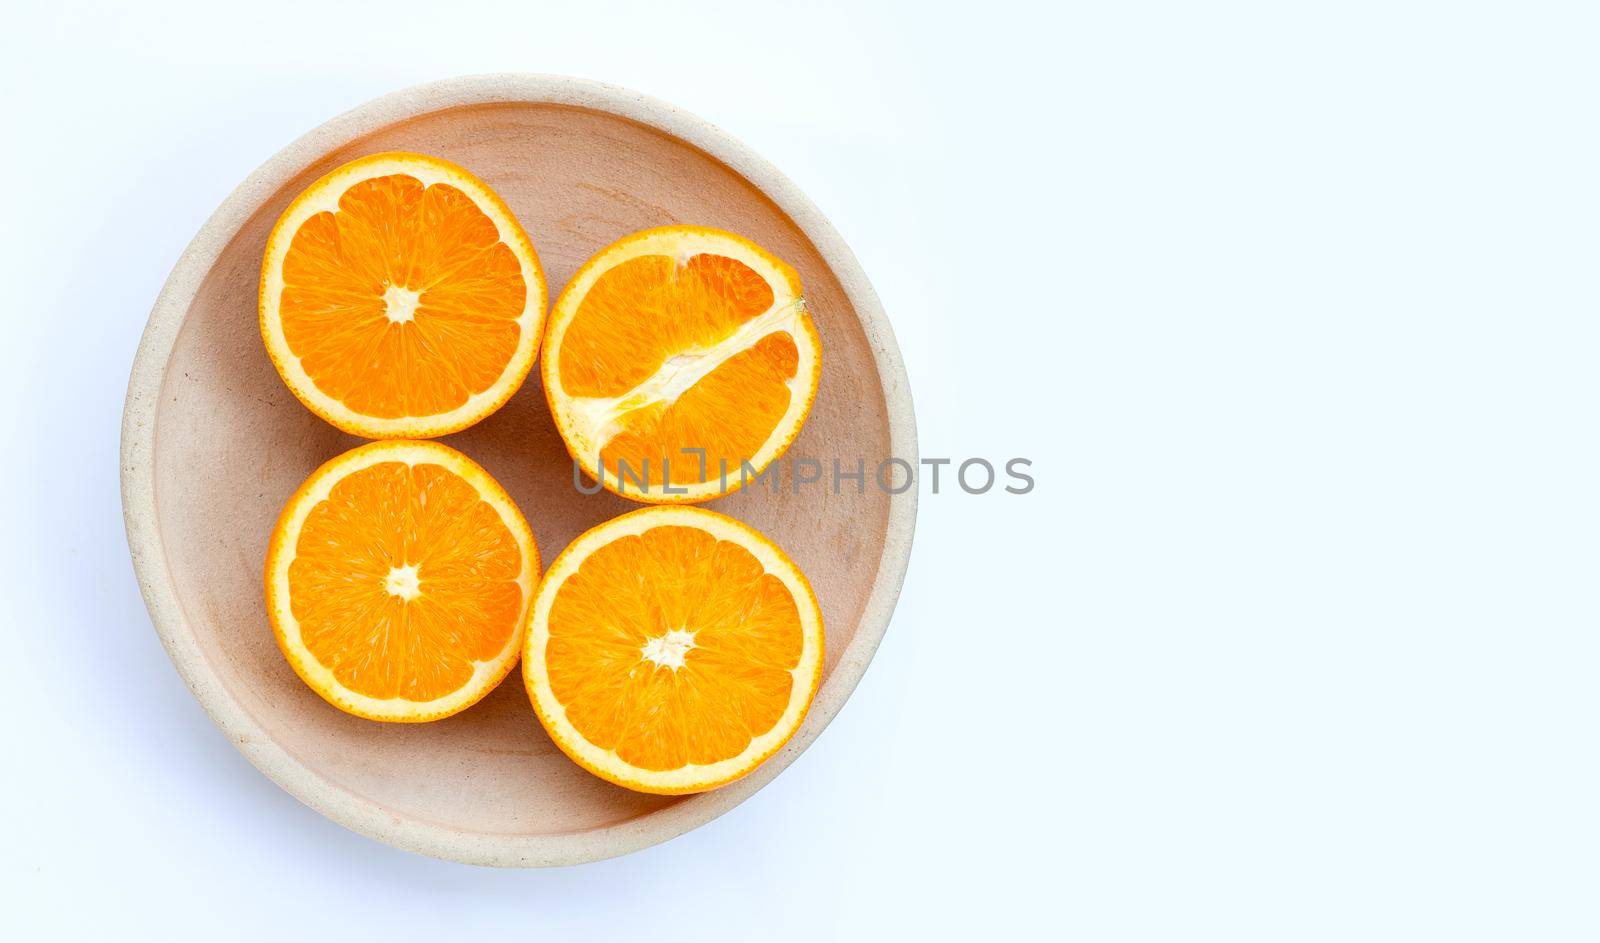 High vitamin C, Juicy and sweet. Fresh orange fruit on white background.